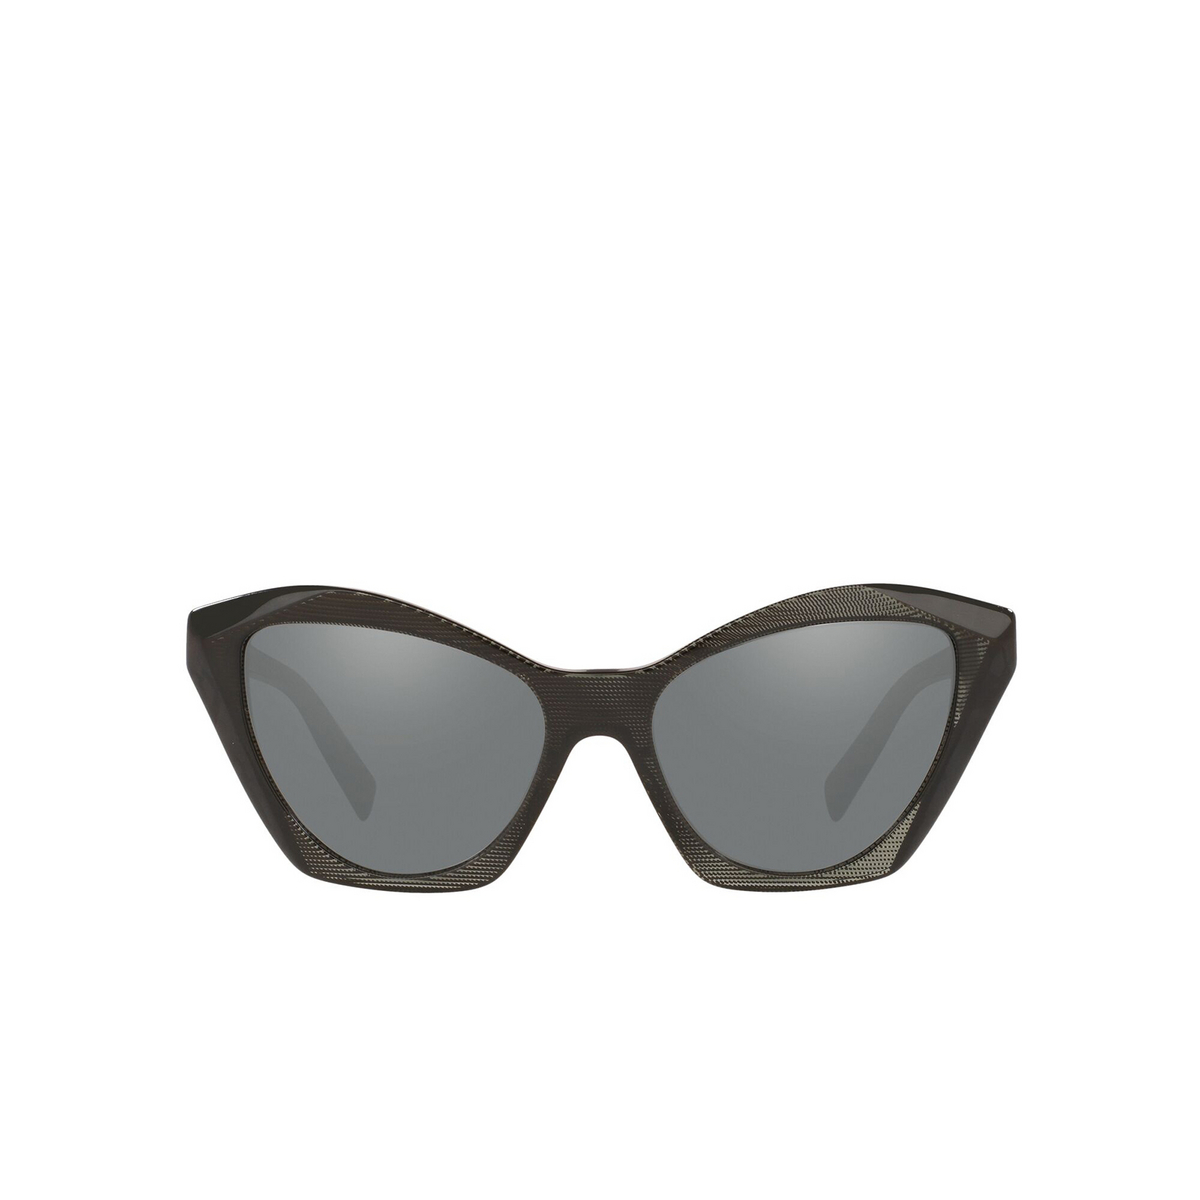 Alain Mikli® Irregular Sunglasses: Ambrette A05056 color Pointille Black / Noir Mikli 001/6G - front view.